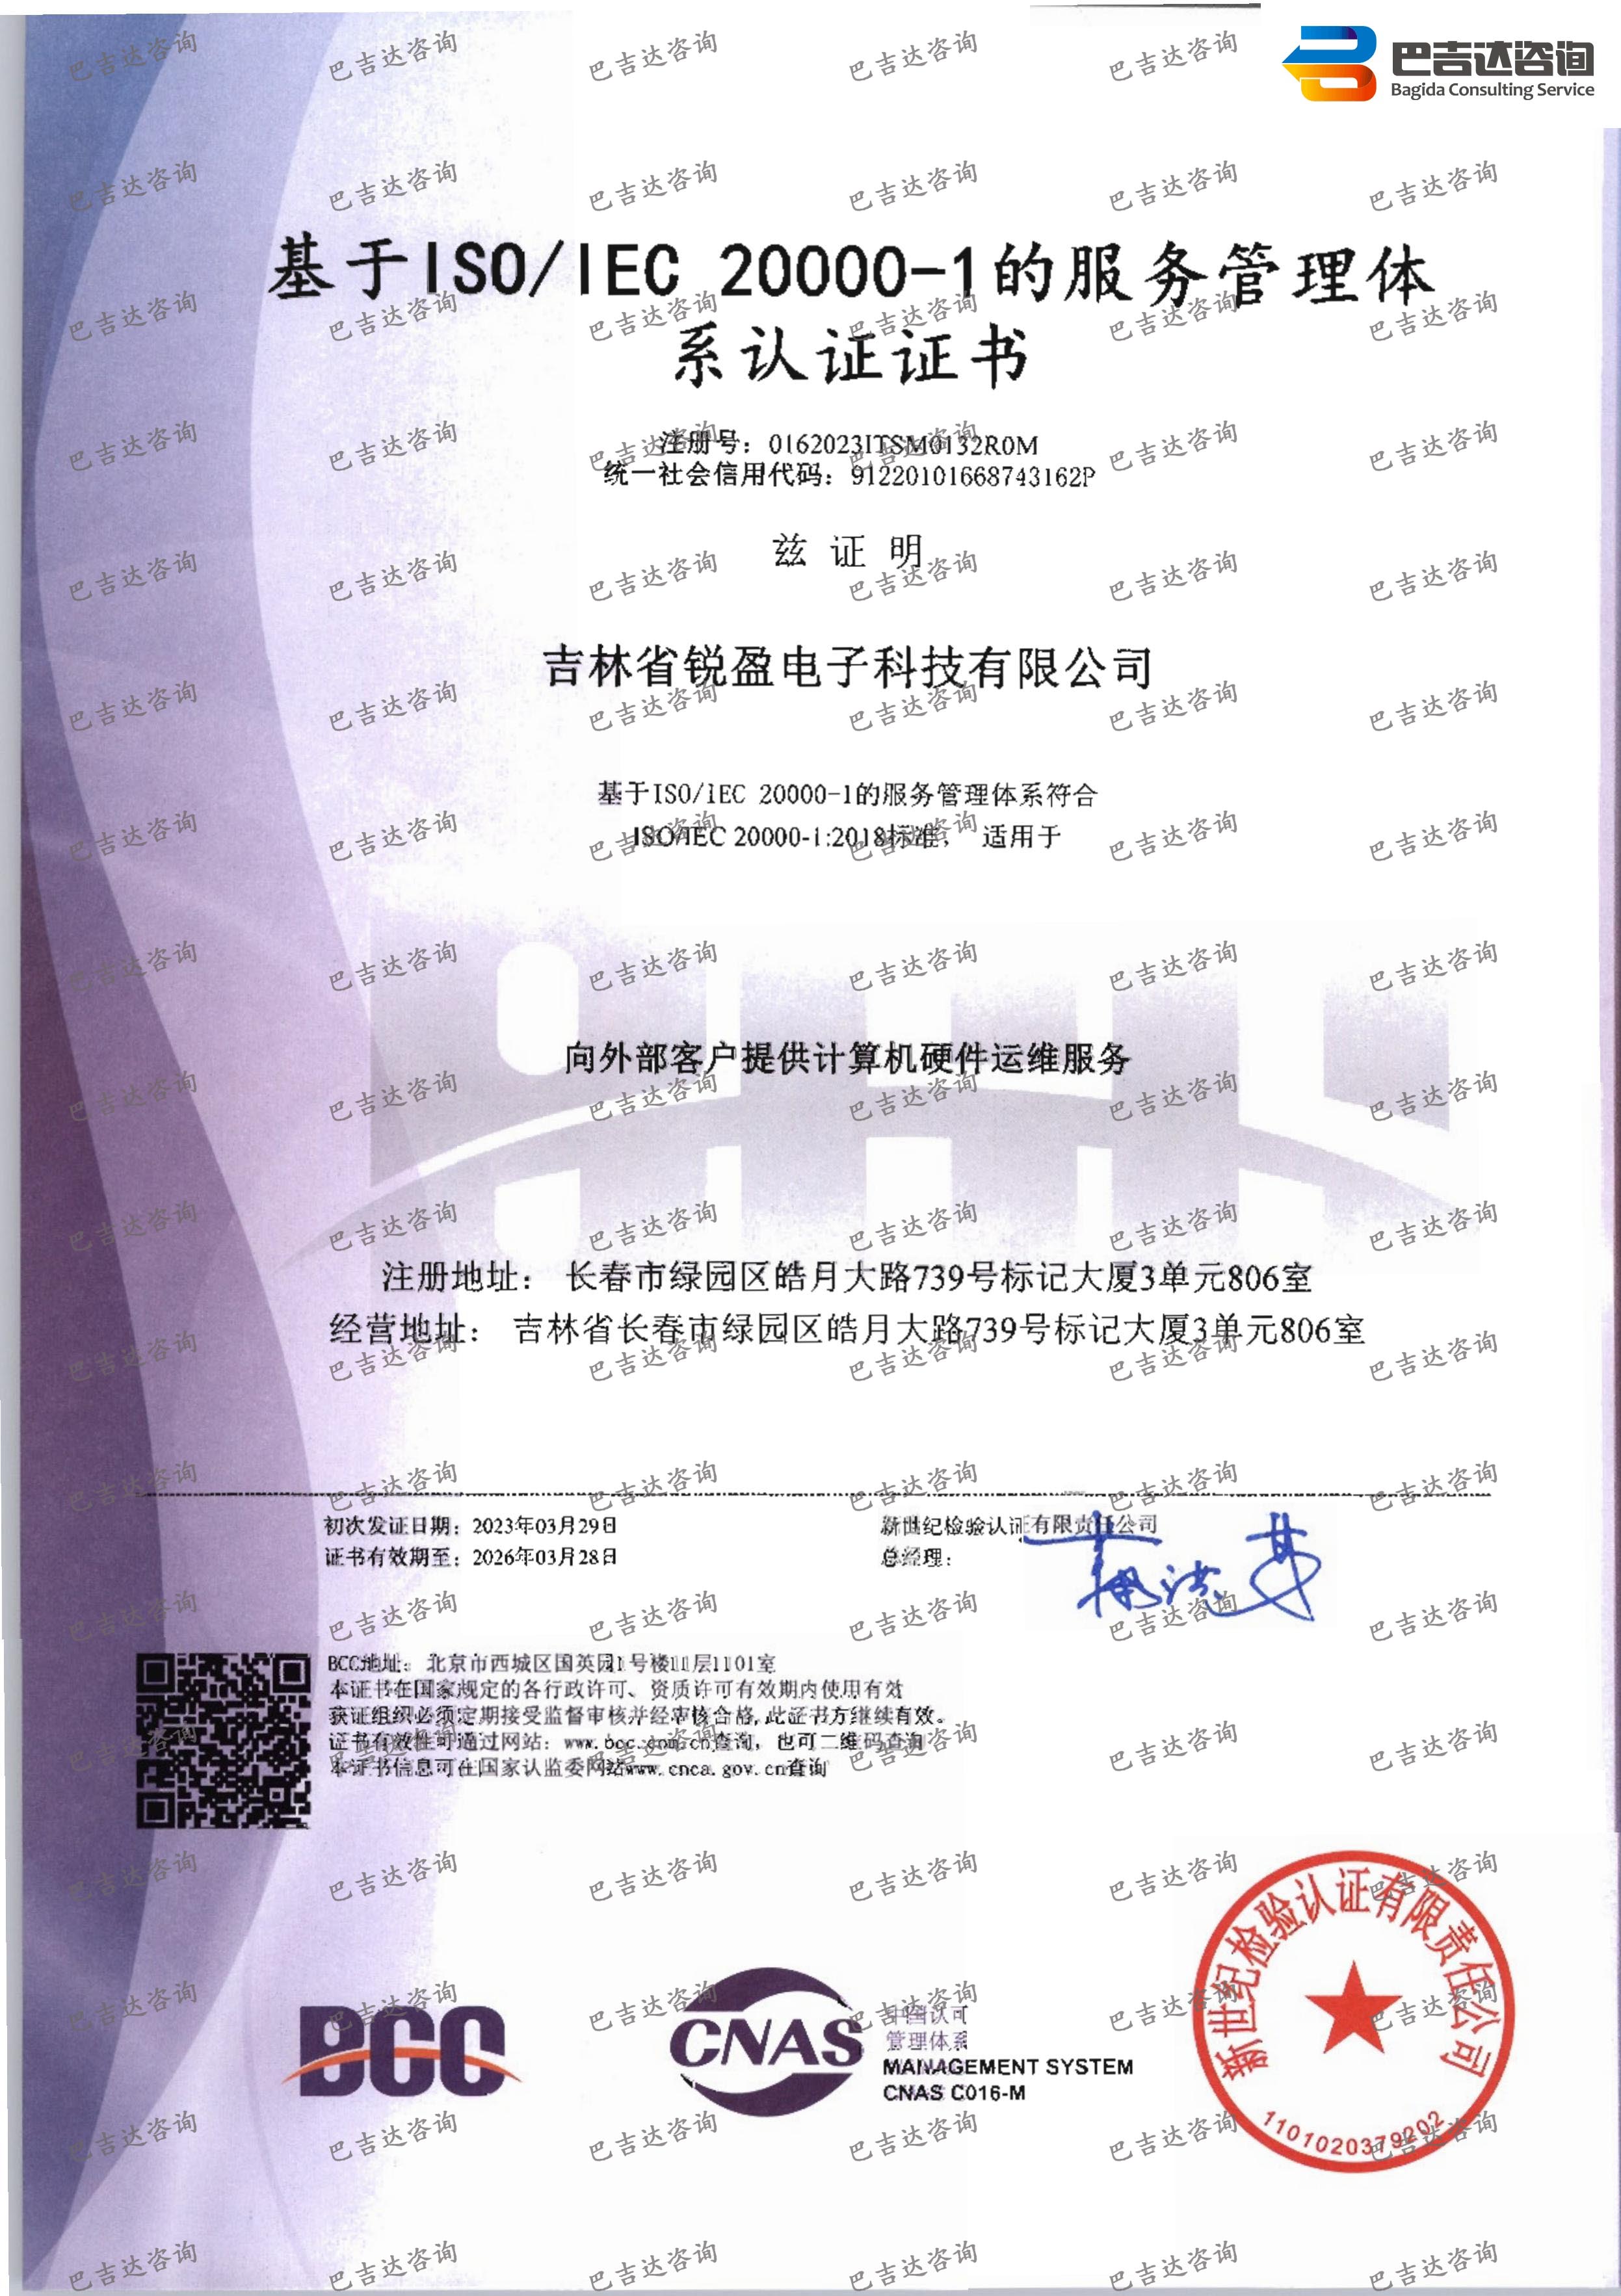 吉林省锐盈电子科技有限公司信息技术服务管理体系认证证书